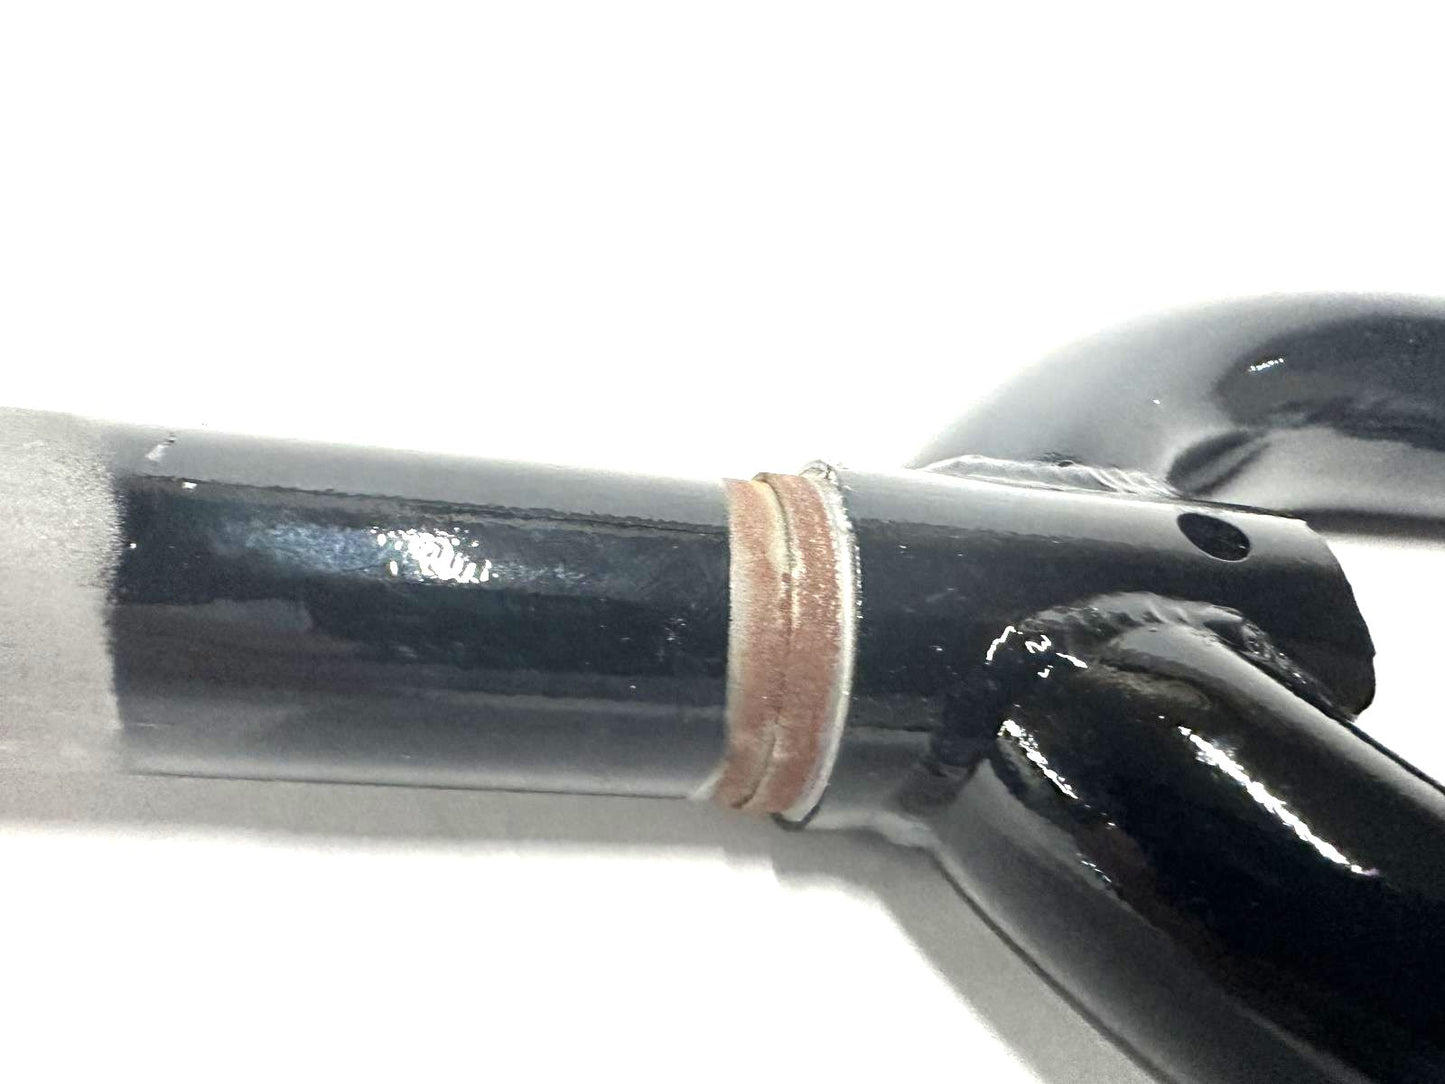 Framed Counsel 27.5" BMX Steel Black Bike 1 1/8 Threadless Fork 3/8 Axle New